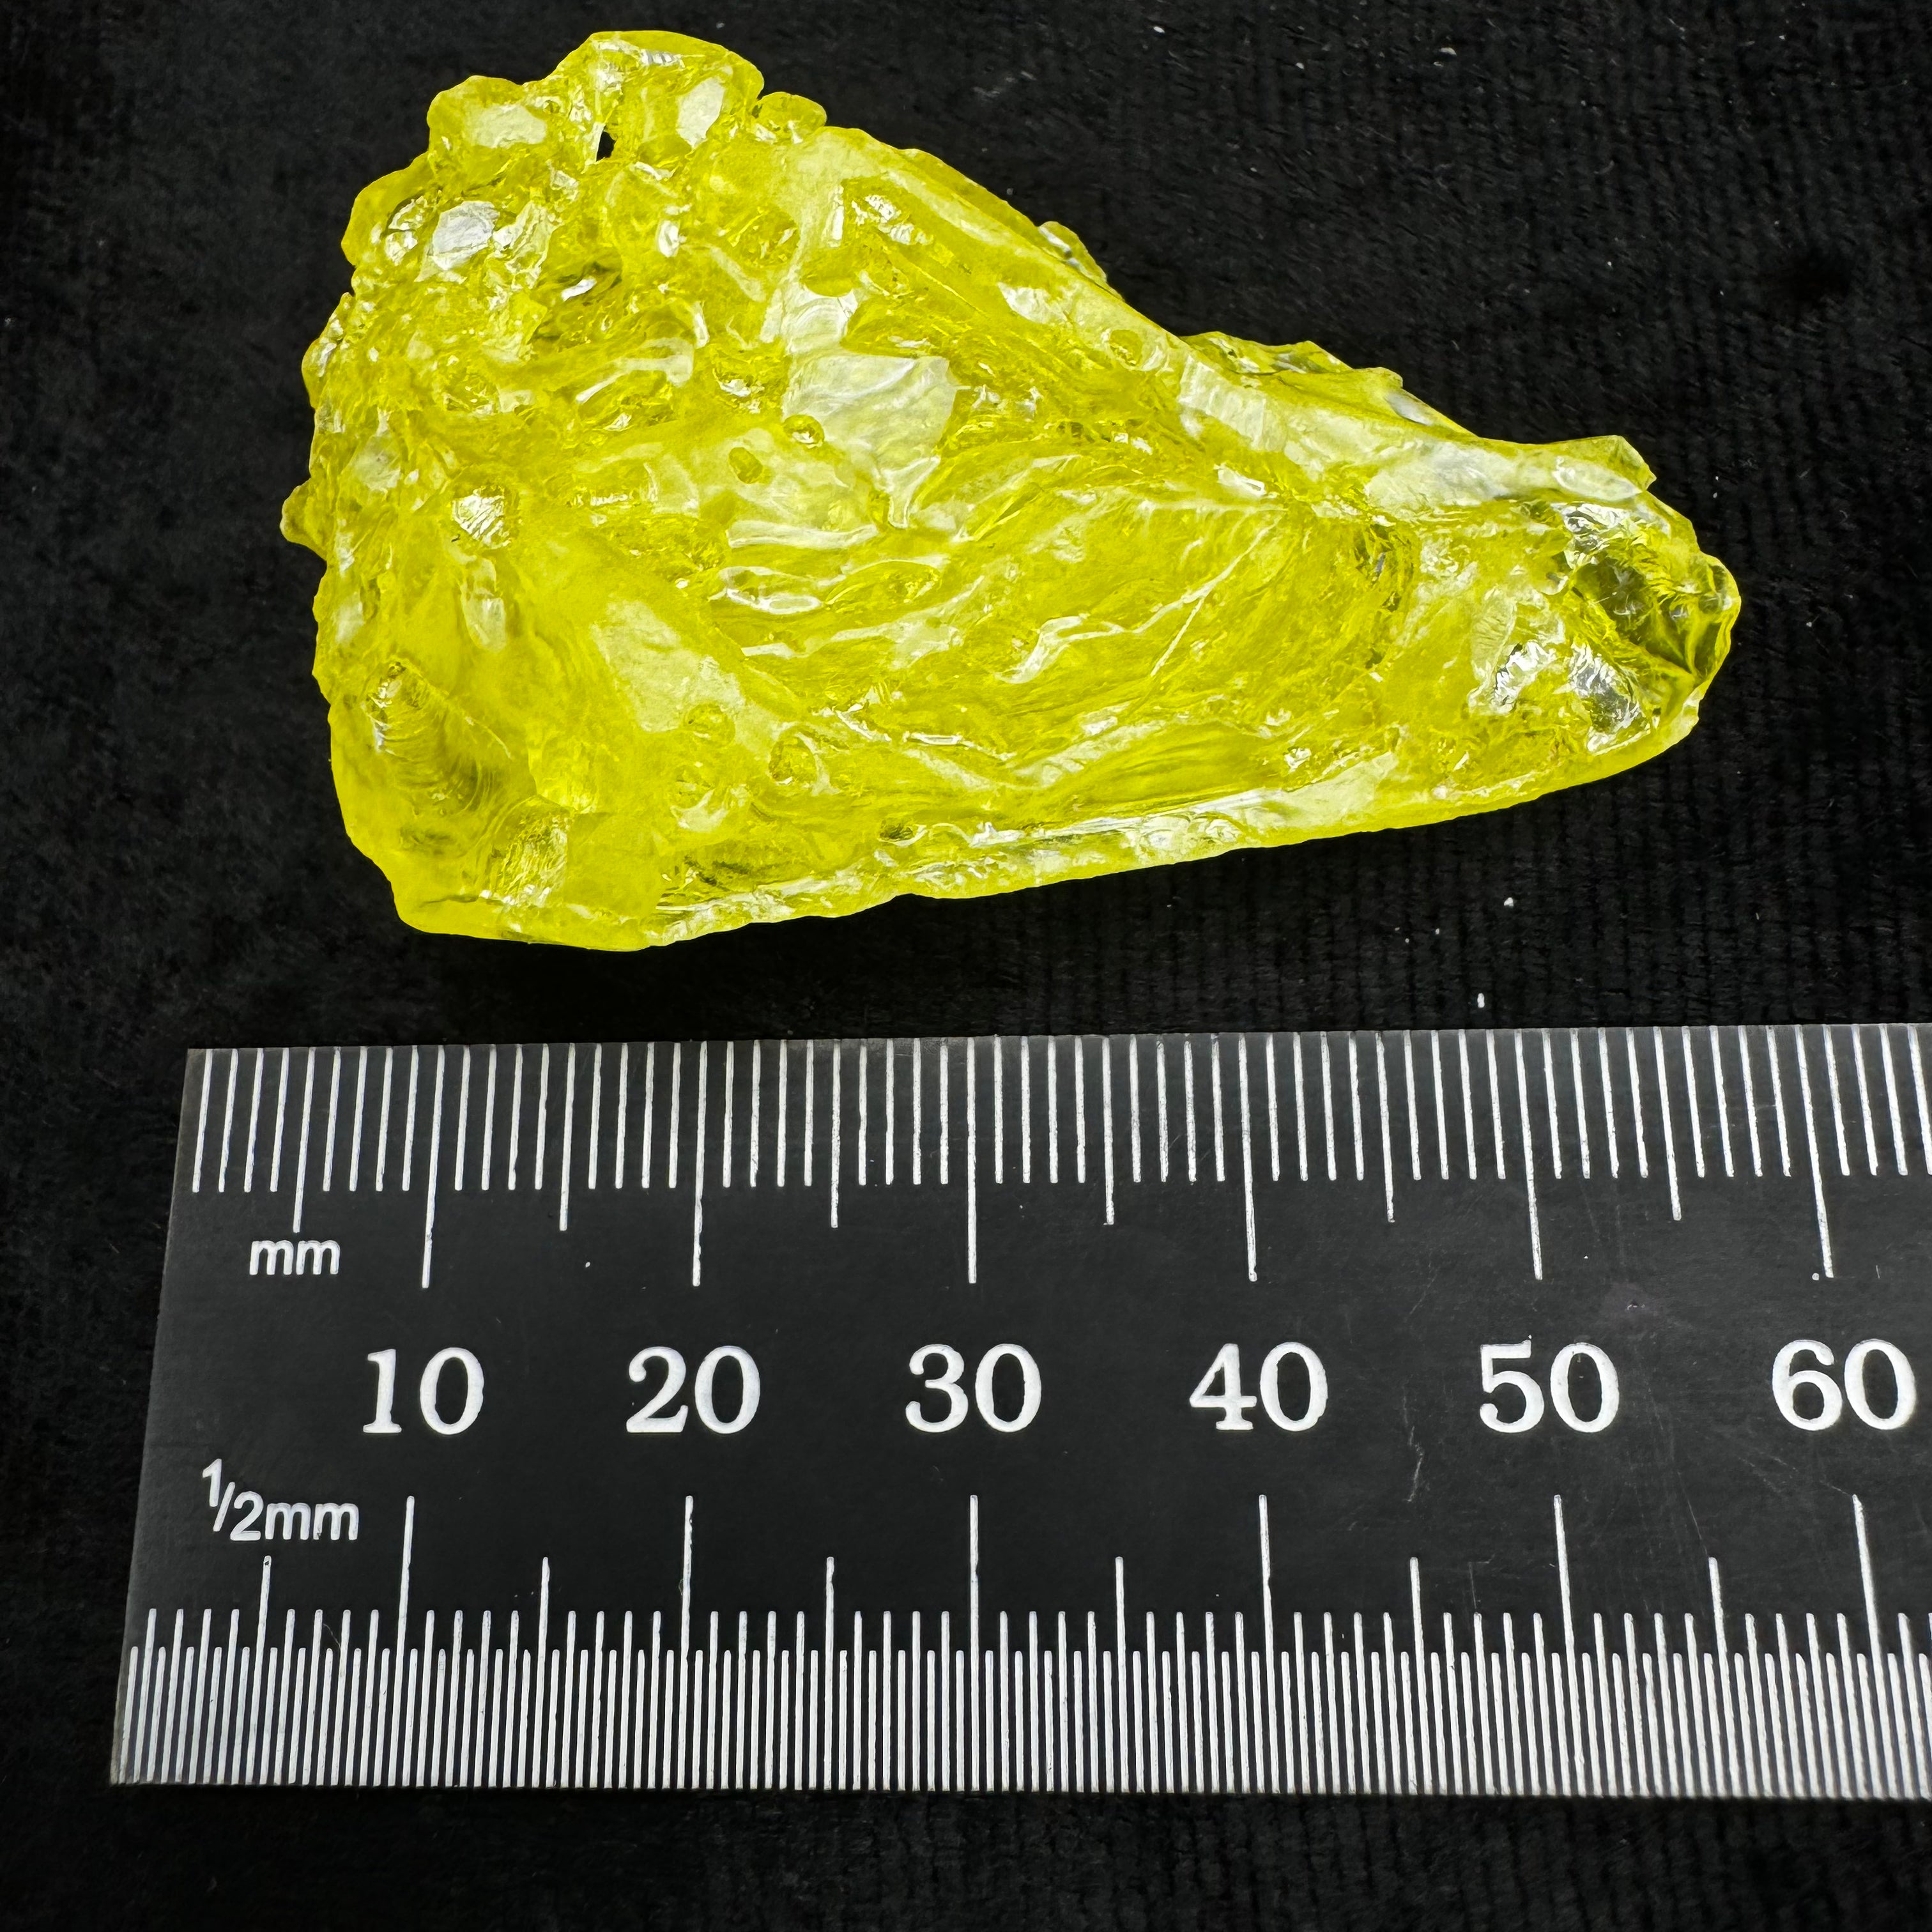 Sulfur Whole Crystal - 183